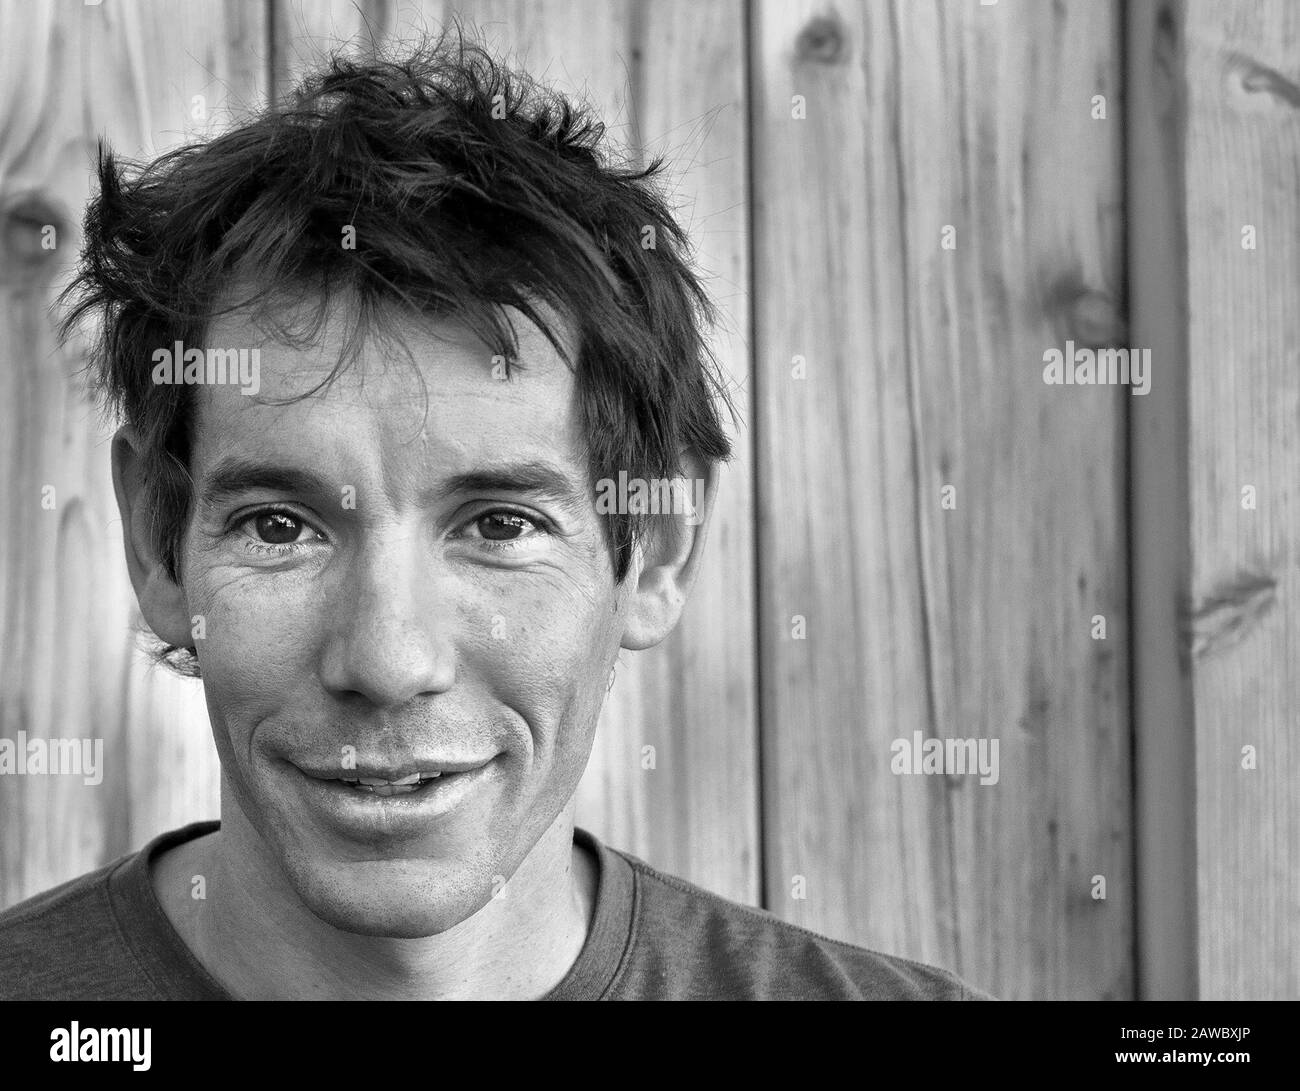 Porträt von Alex Honnold, dem stärksten freien Solo-Kletterer. Stockfoto